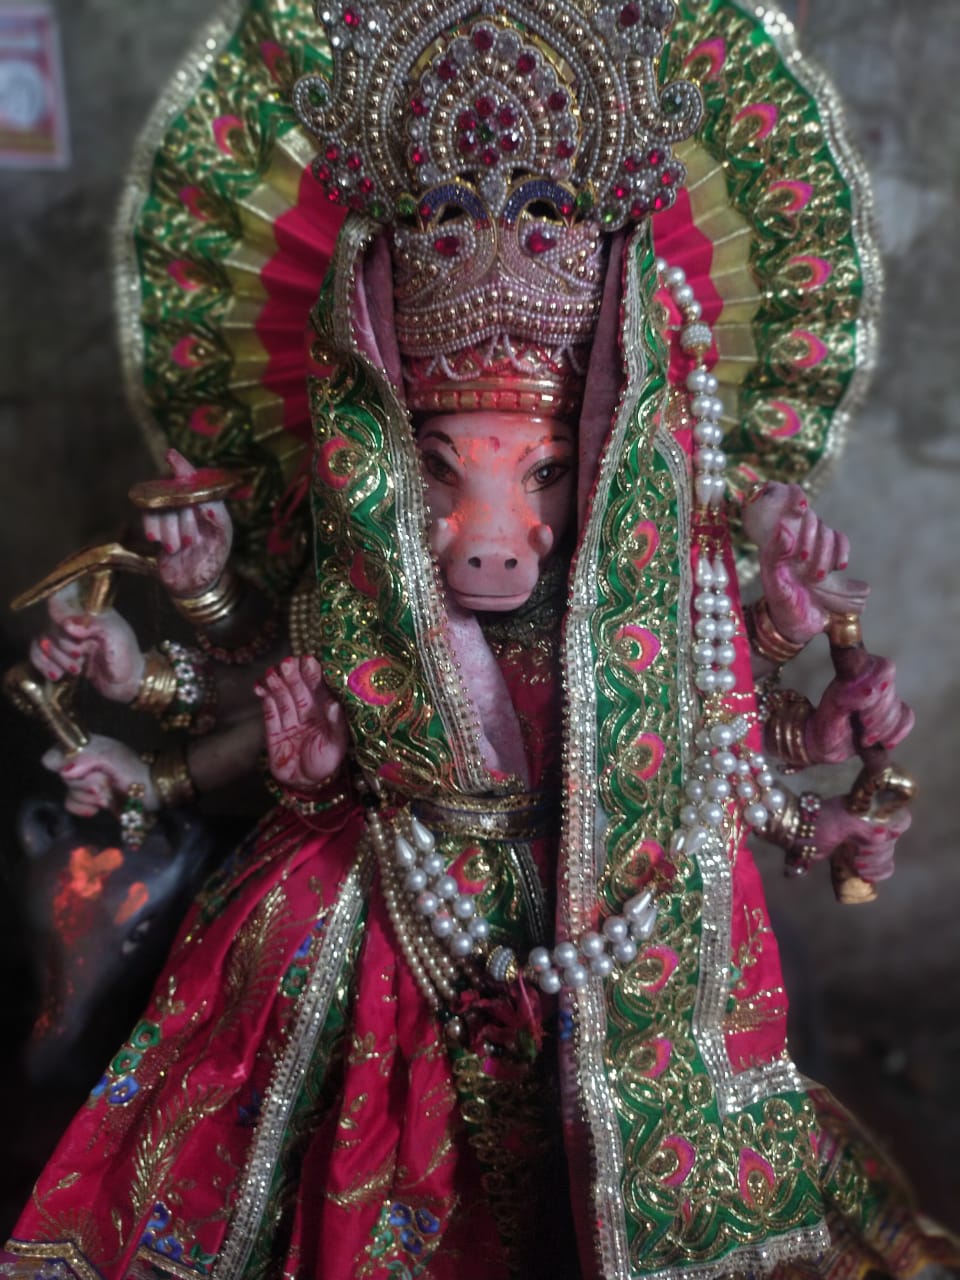 गोण्डा:देश के 34वे शक्तिपीठ में माना जाता मां बाराही देवी का मंदिर,मंदिर का  नीर व वट वृक्ष का दूध लगाने से दूर होते आंखों के सारे रोग | CRIME JUNCTION